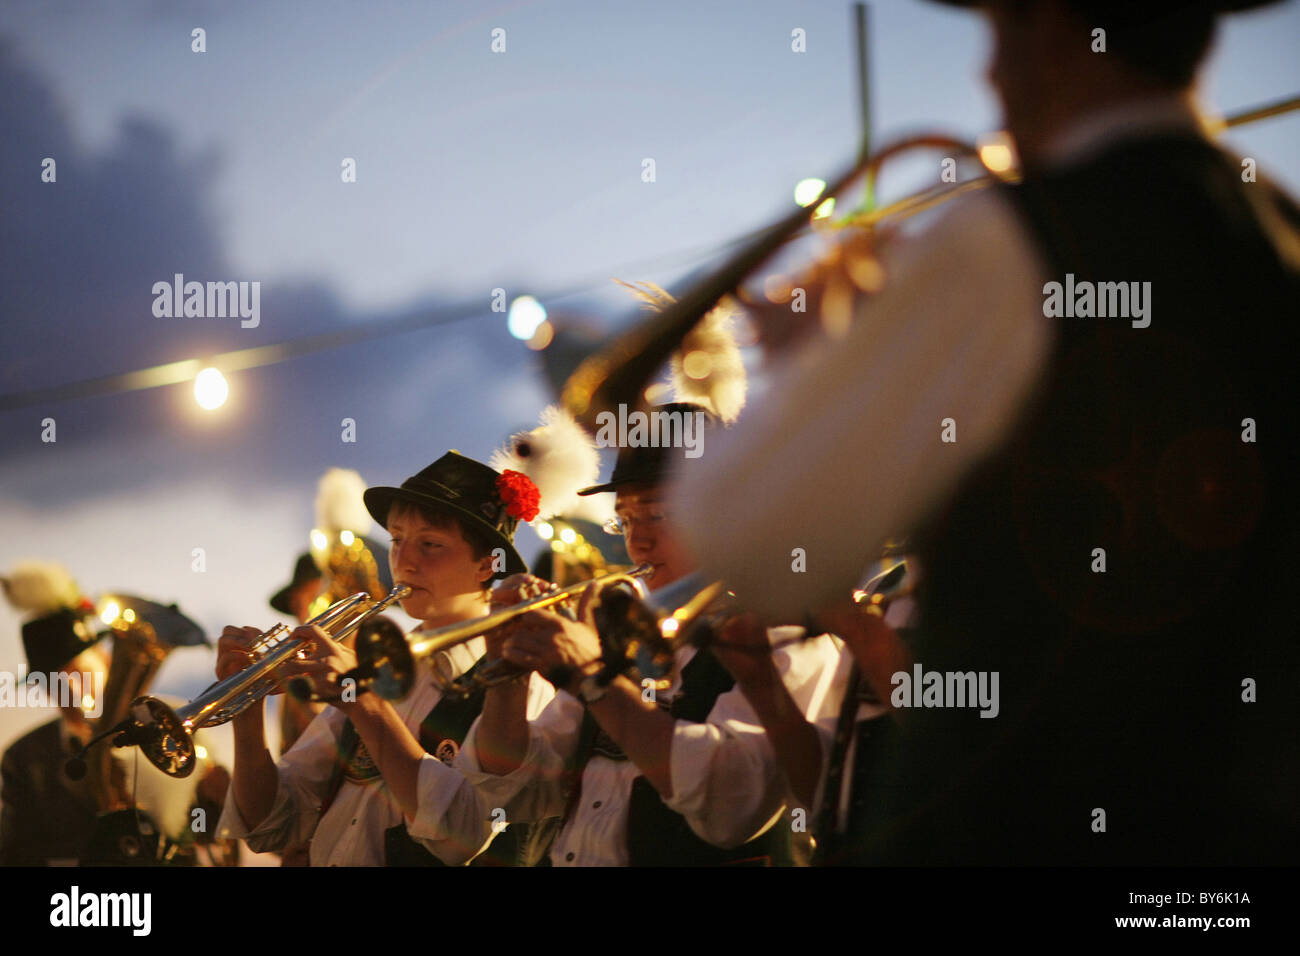 Brass band, Midsummer Festival, Muensing, Bavaria, Germany Stock Photo